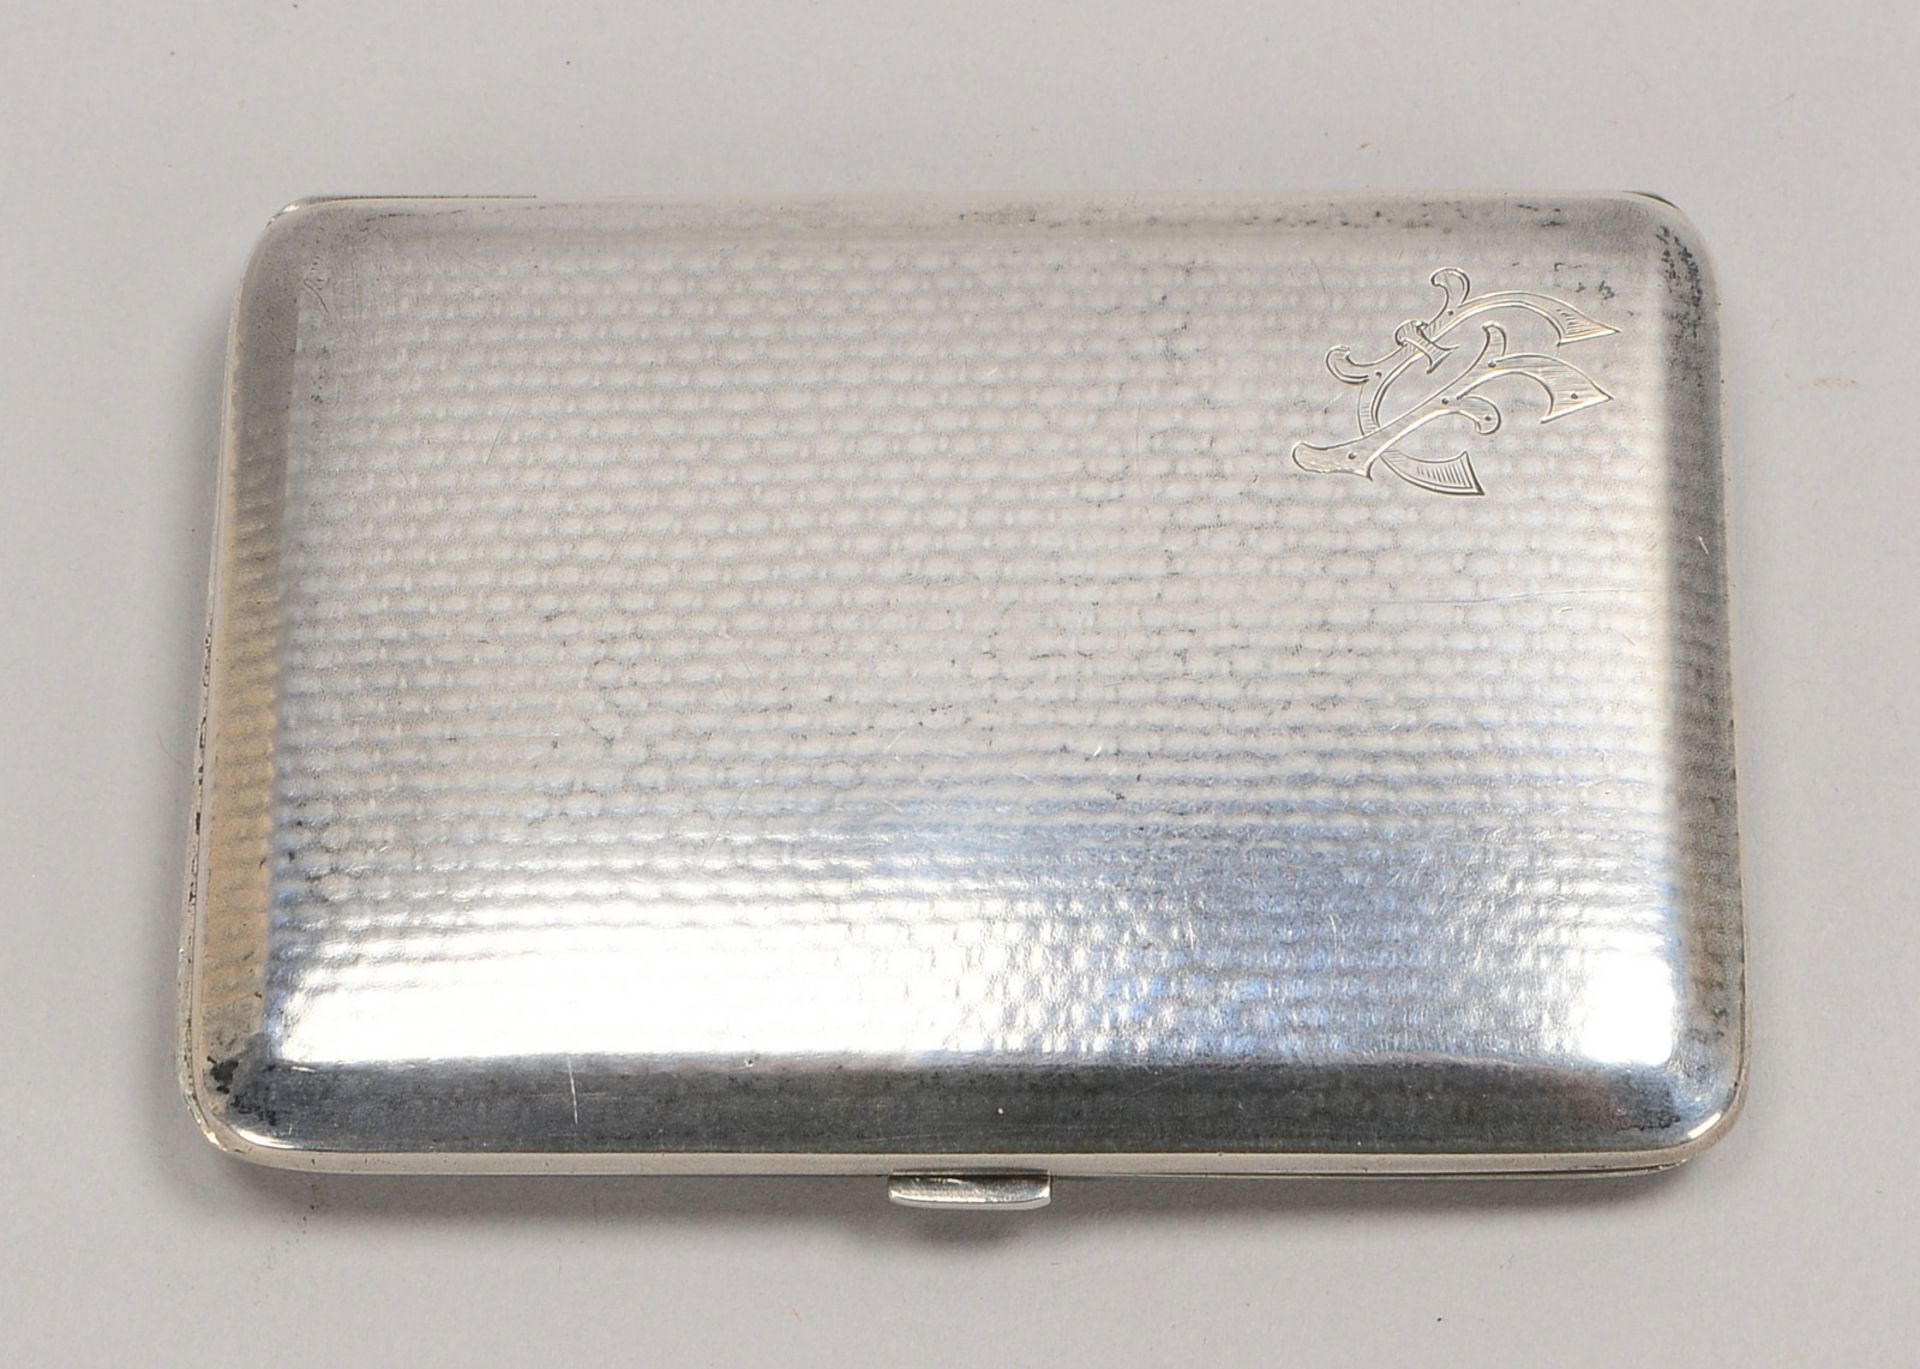 Zigarettenetui, 800 Silber, Deckel mit Initialengravur, Innenverg./grav. Widmung; Gew. 77 g